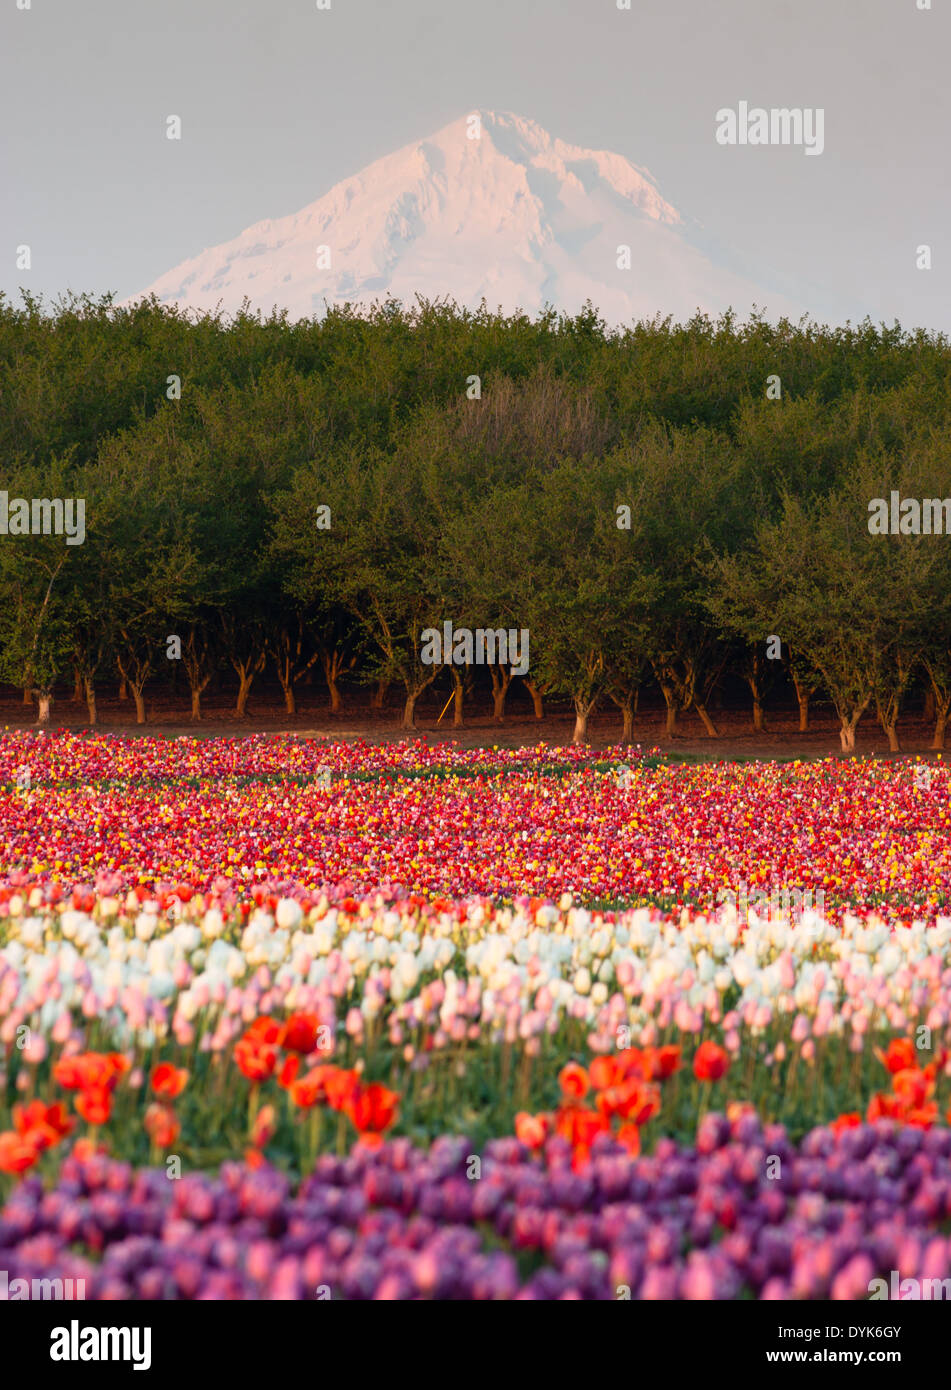 Mehrere Farben von Tulpen wachsen im Feld mit Mt. Hood jenseits Stockfoto